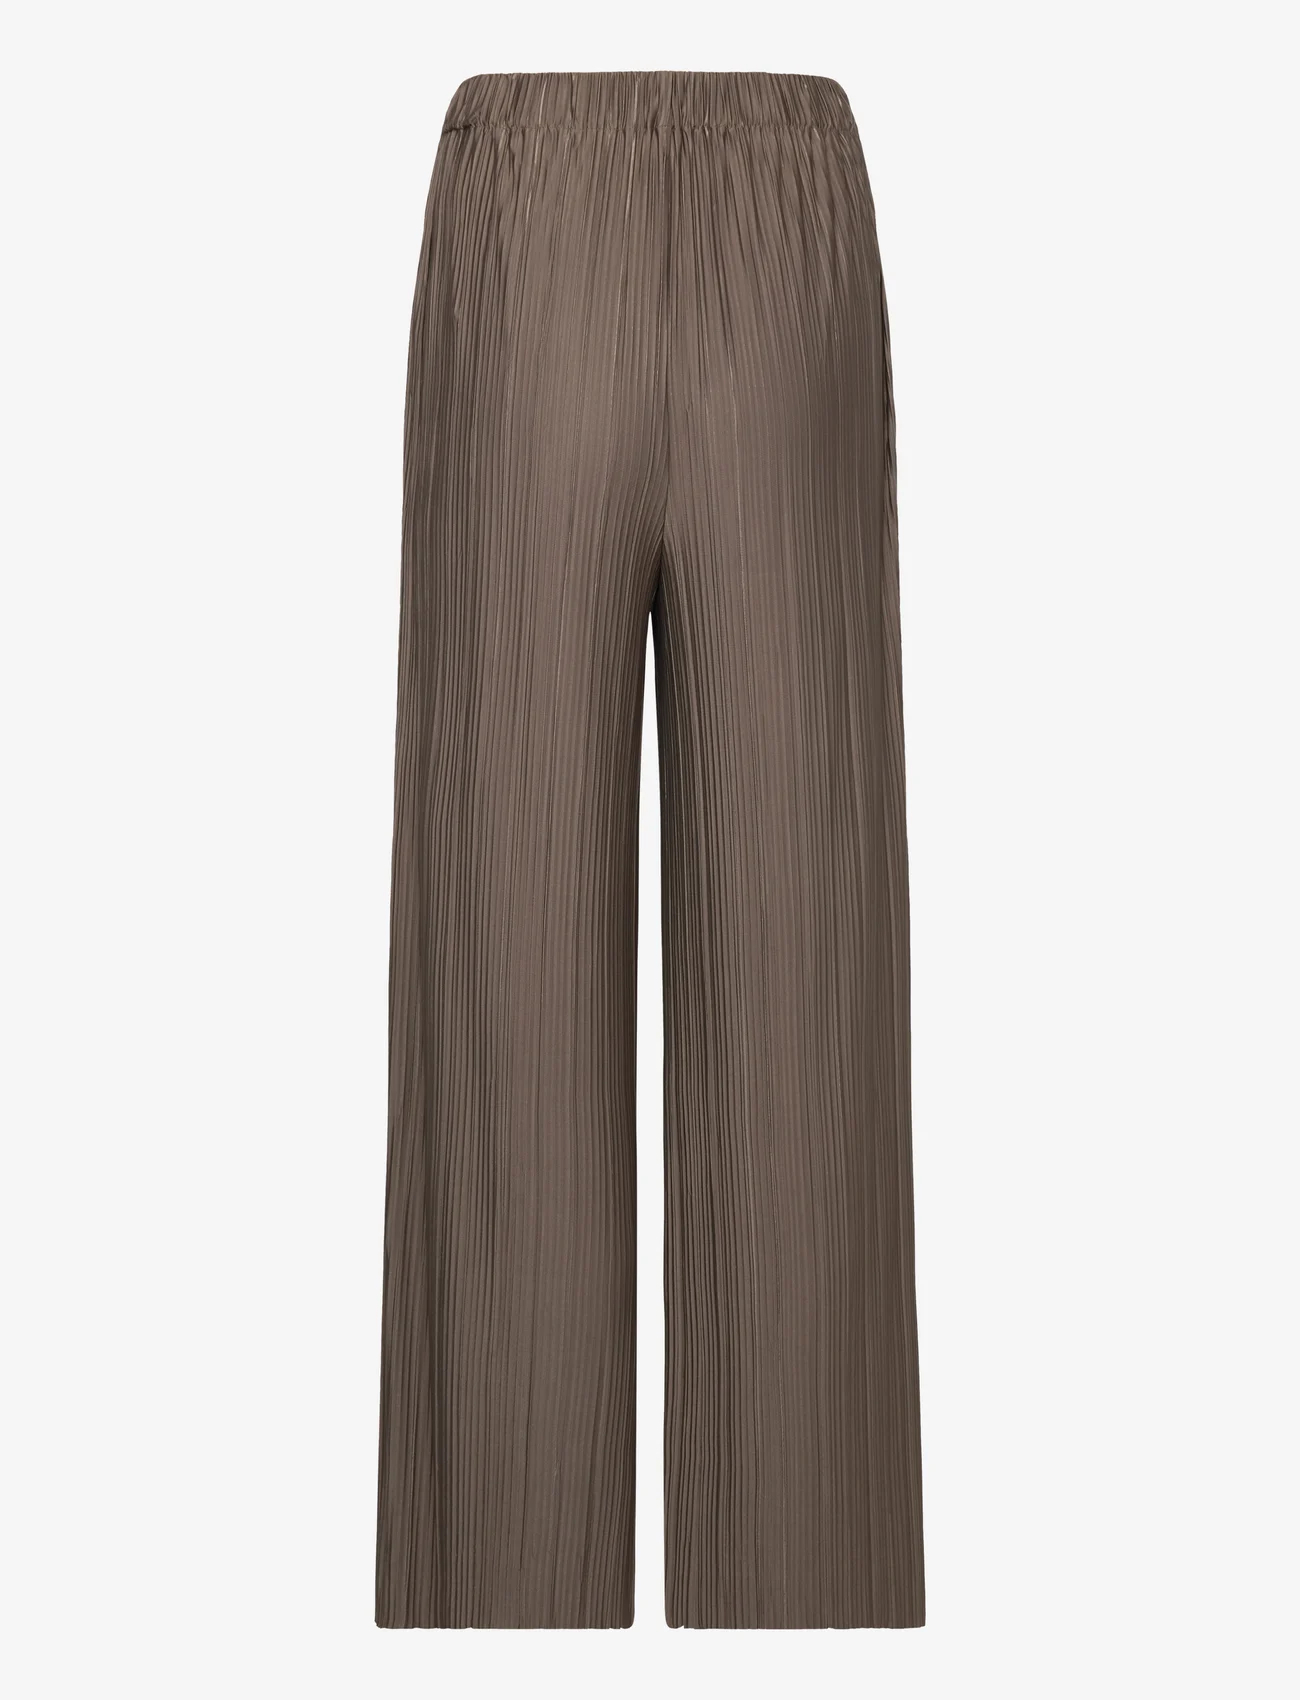 Samsøe Samsøe - Uma trousers 10167 - wide leg trousers - major brown - 1